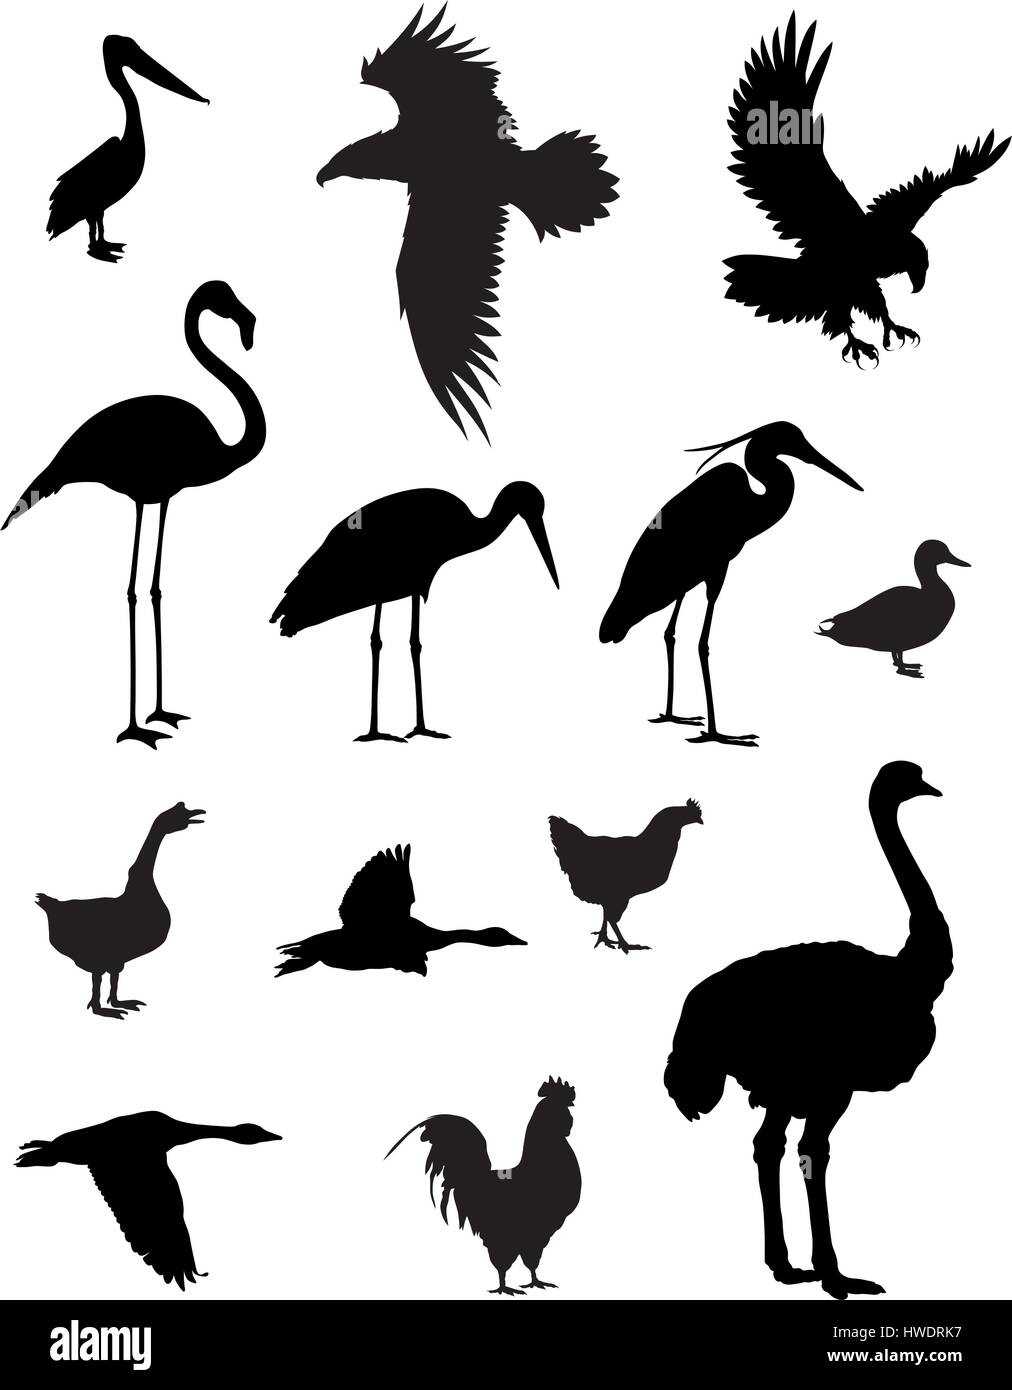 Illustrazione Vettoriale di vari uccelli sagome Illustrazione Vettoriale